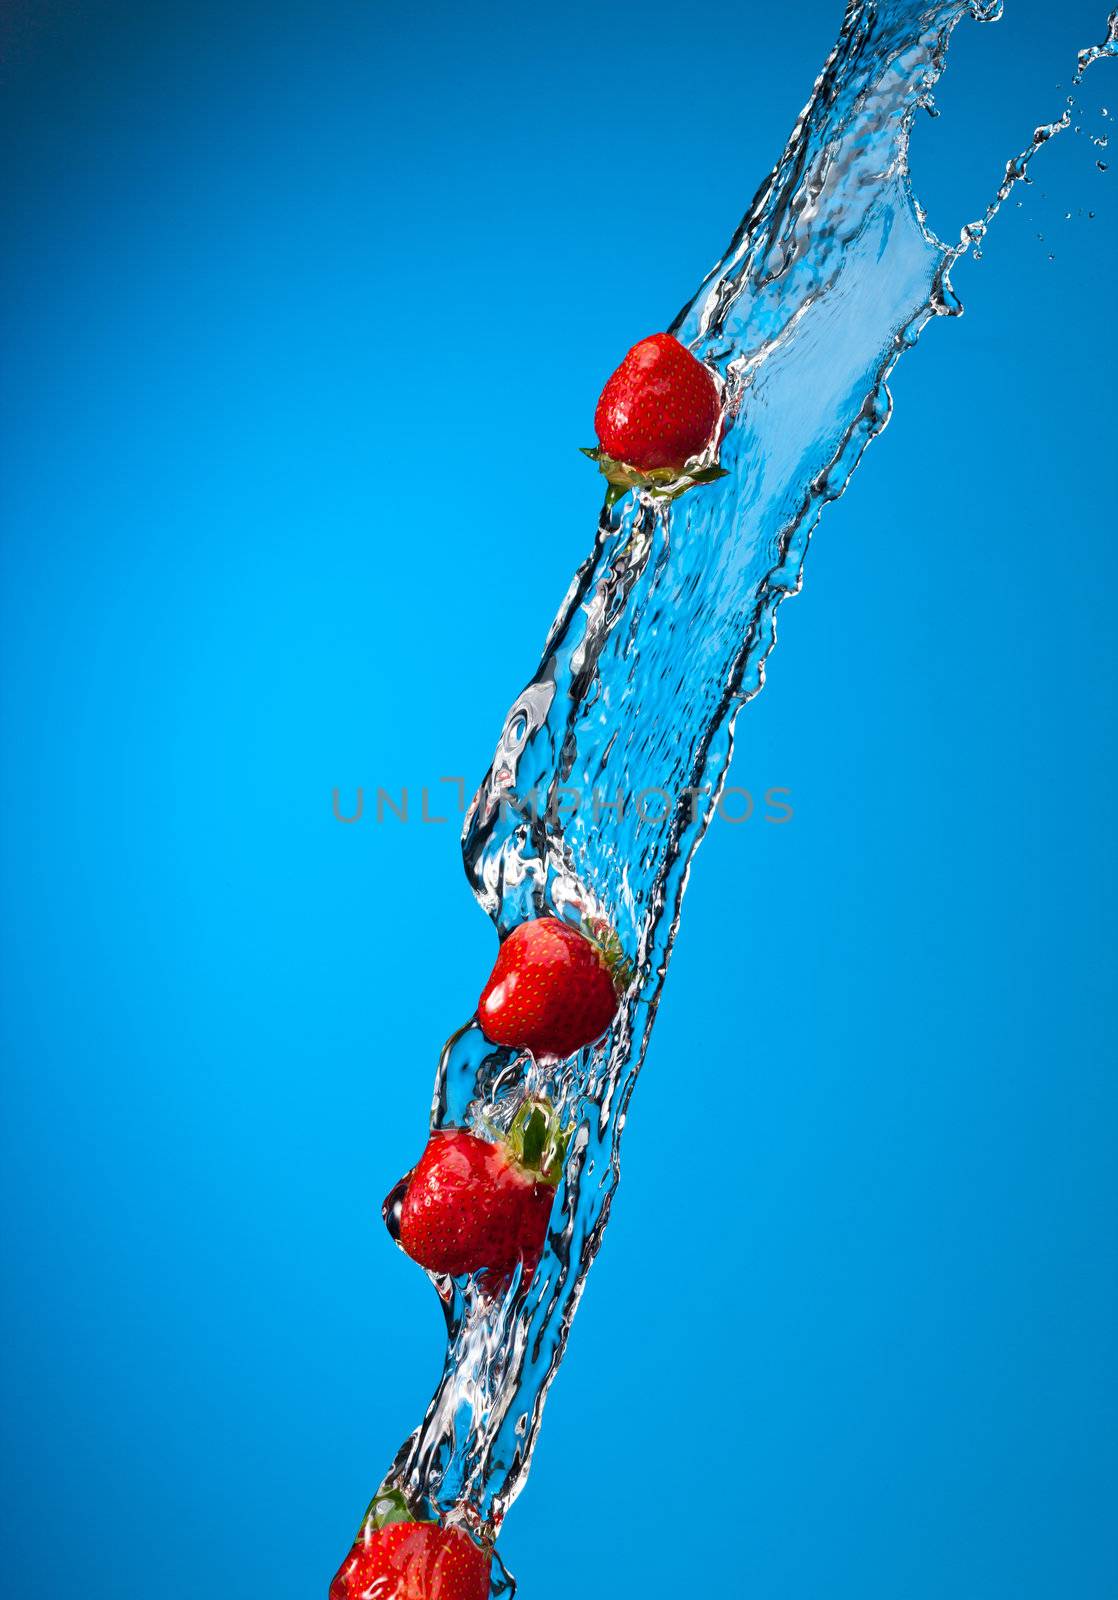 strawberry splash by agg